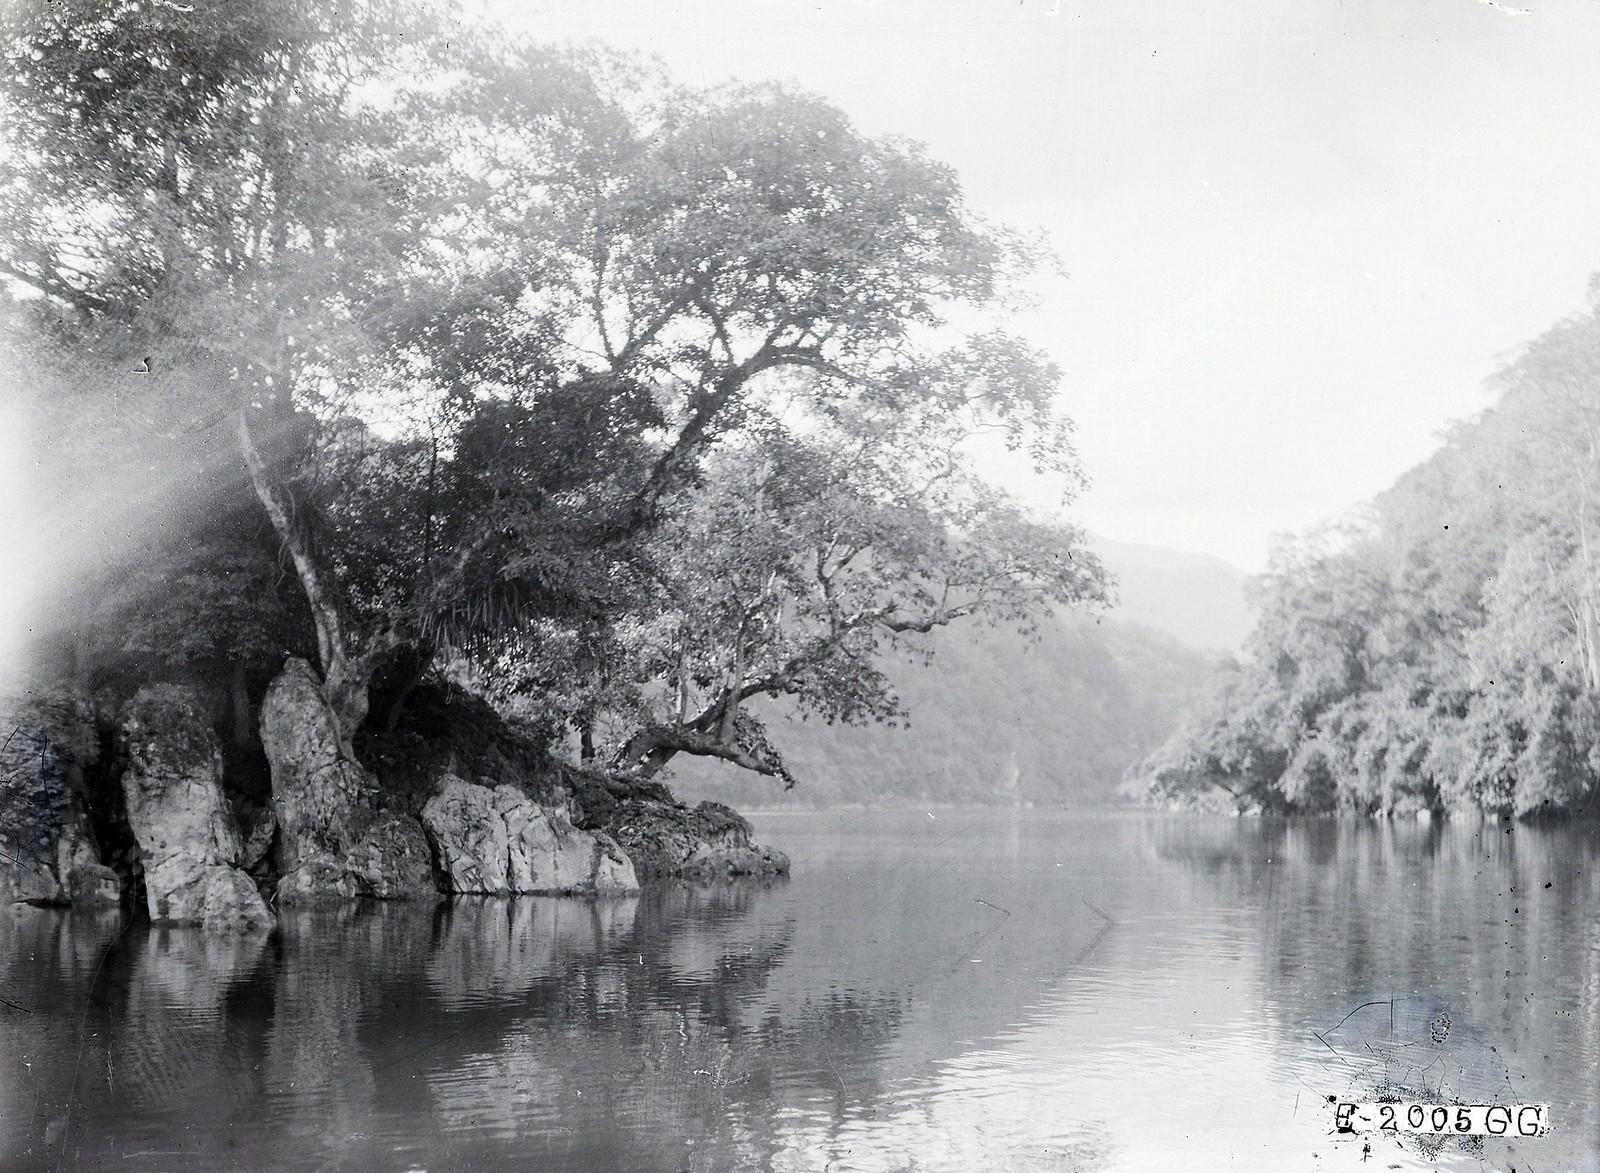 Chùm ảnh:  Hồ Ba Bể năm 1927 qua ống kính của người Pháp